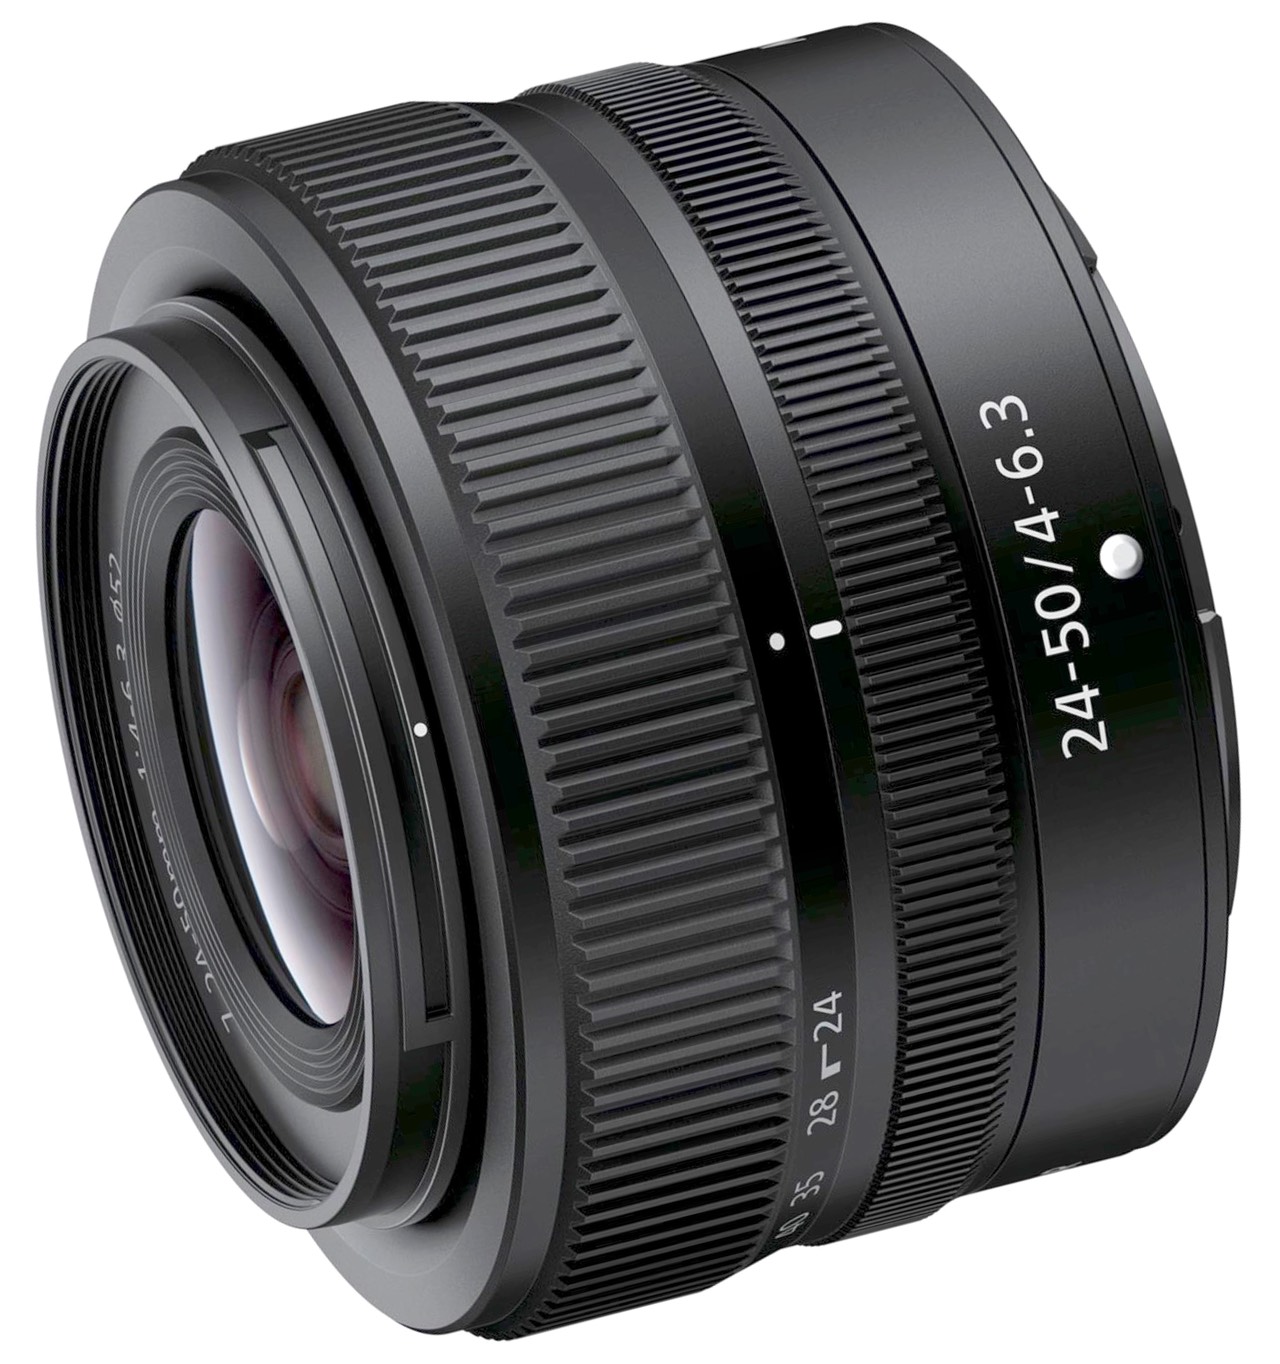 Nikon 24-50mm f/4-6.3 Lens Review | Thom Hogan